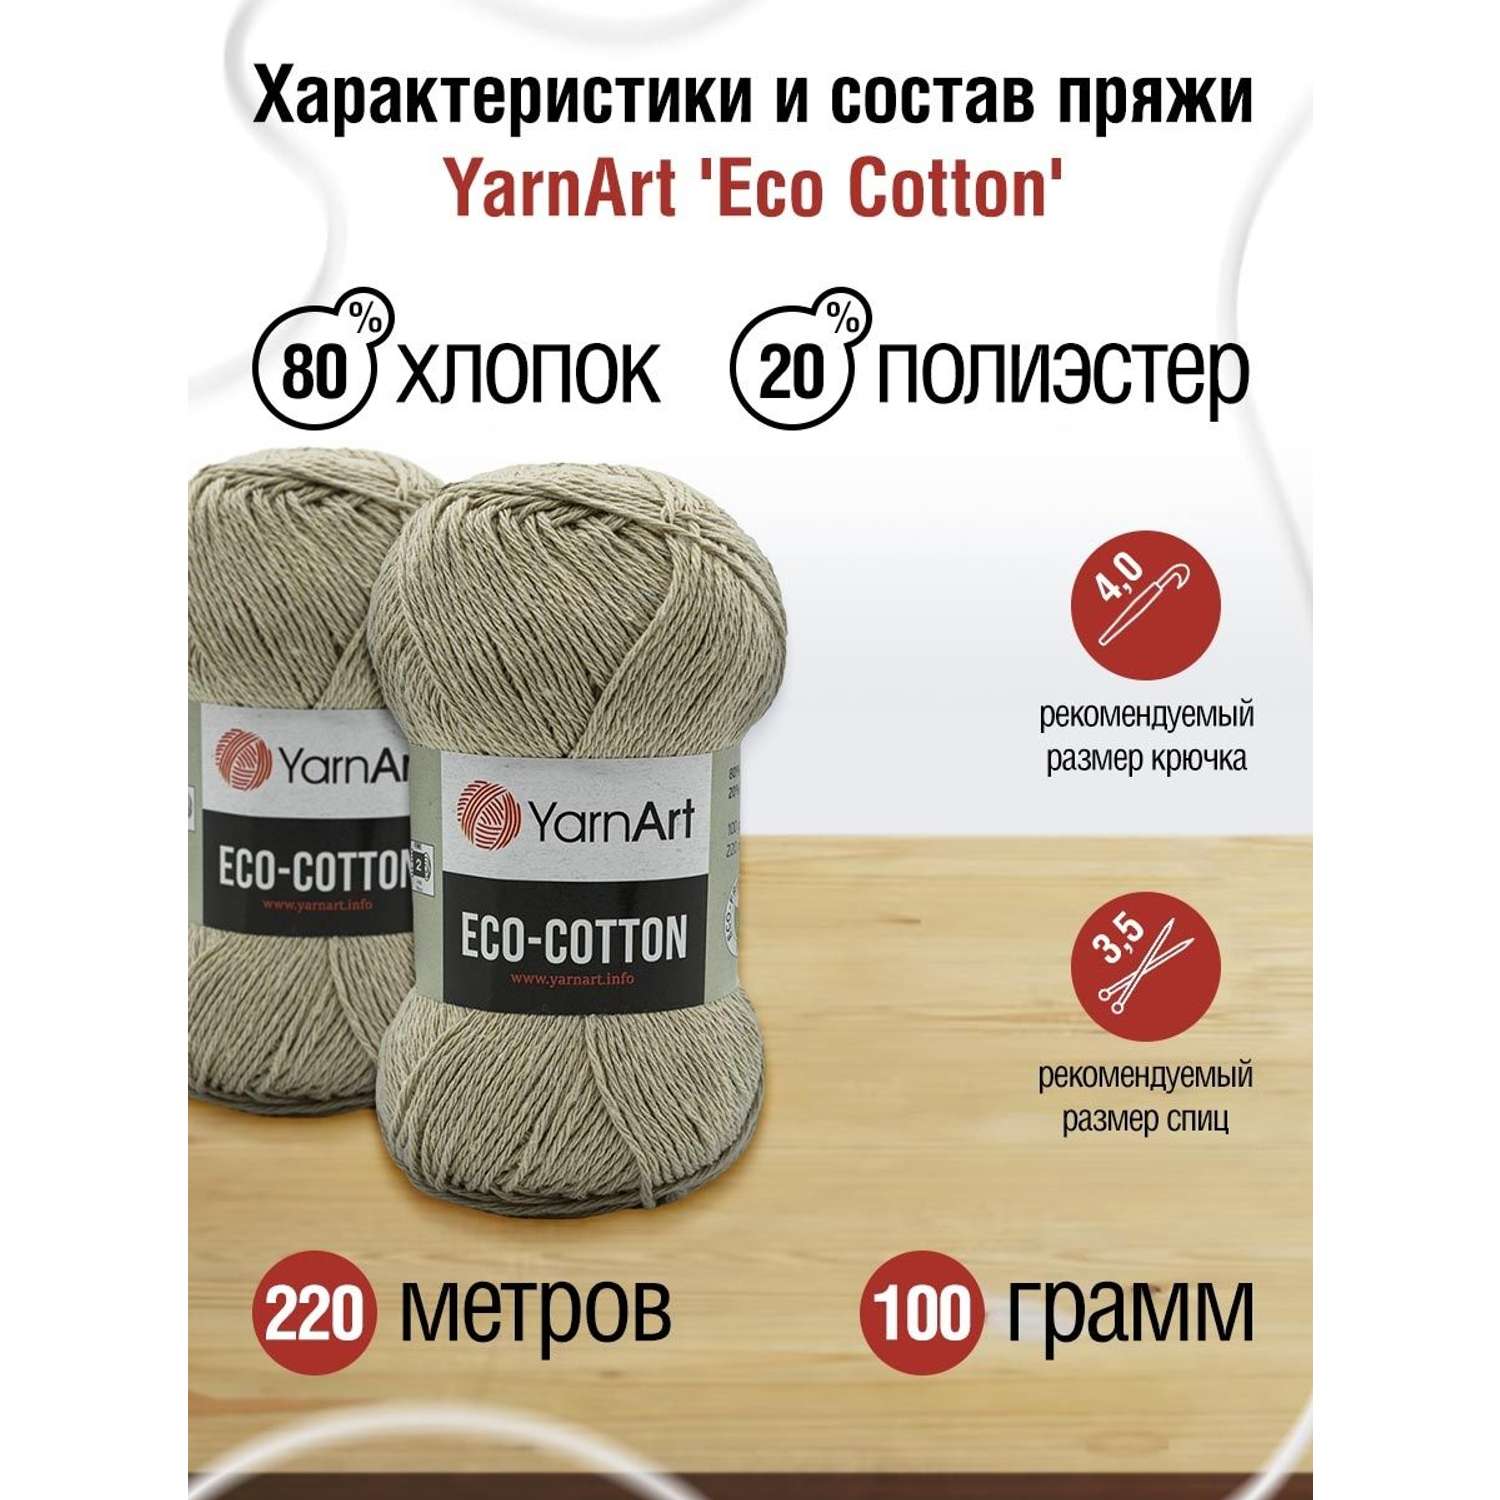 Пряжа YarnArt Eco Cotton комфортная для летних вещей 100 г 220 м 768 холодный беж 5 мотков - фото 3